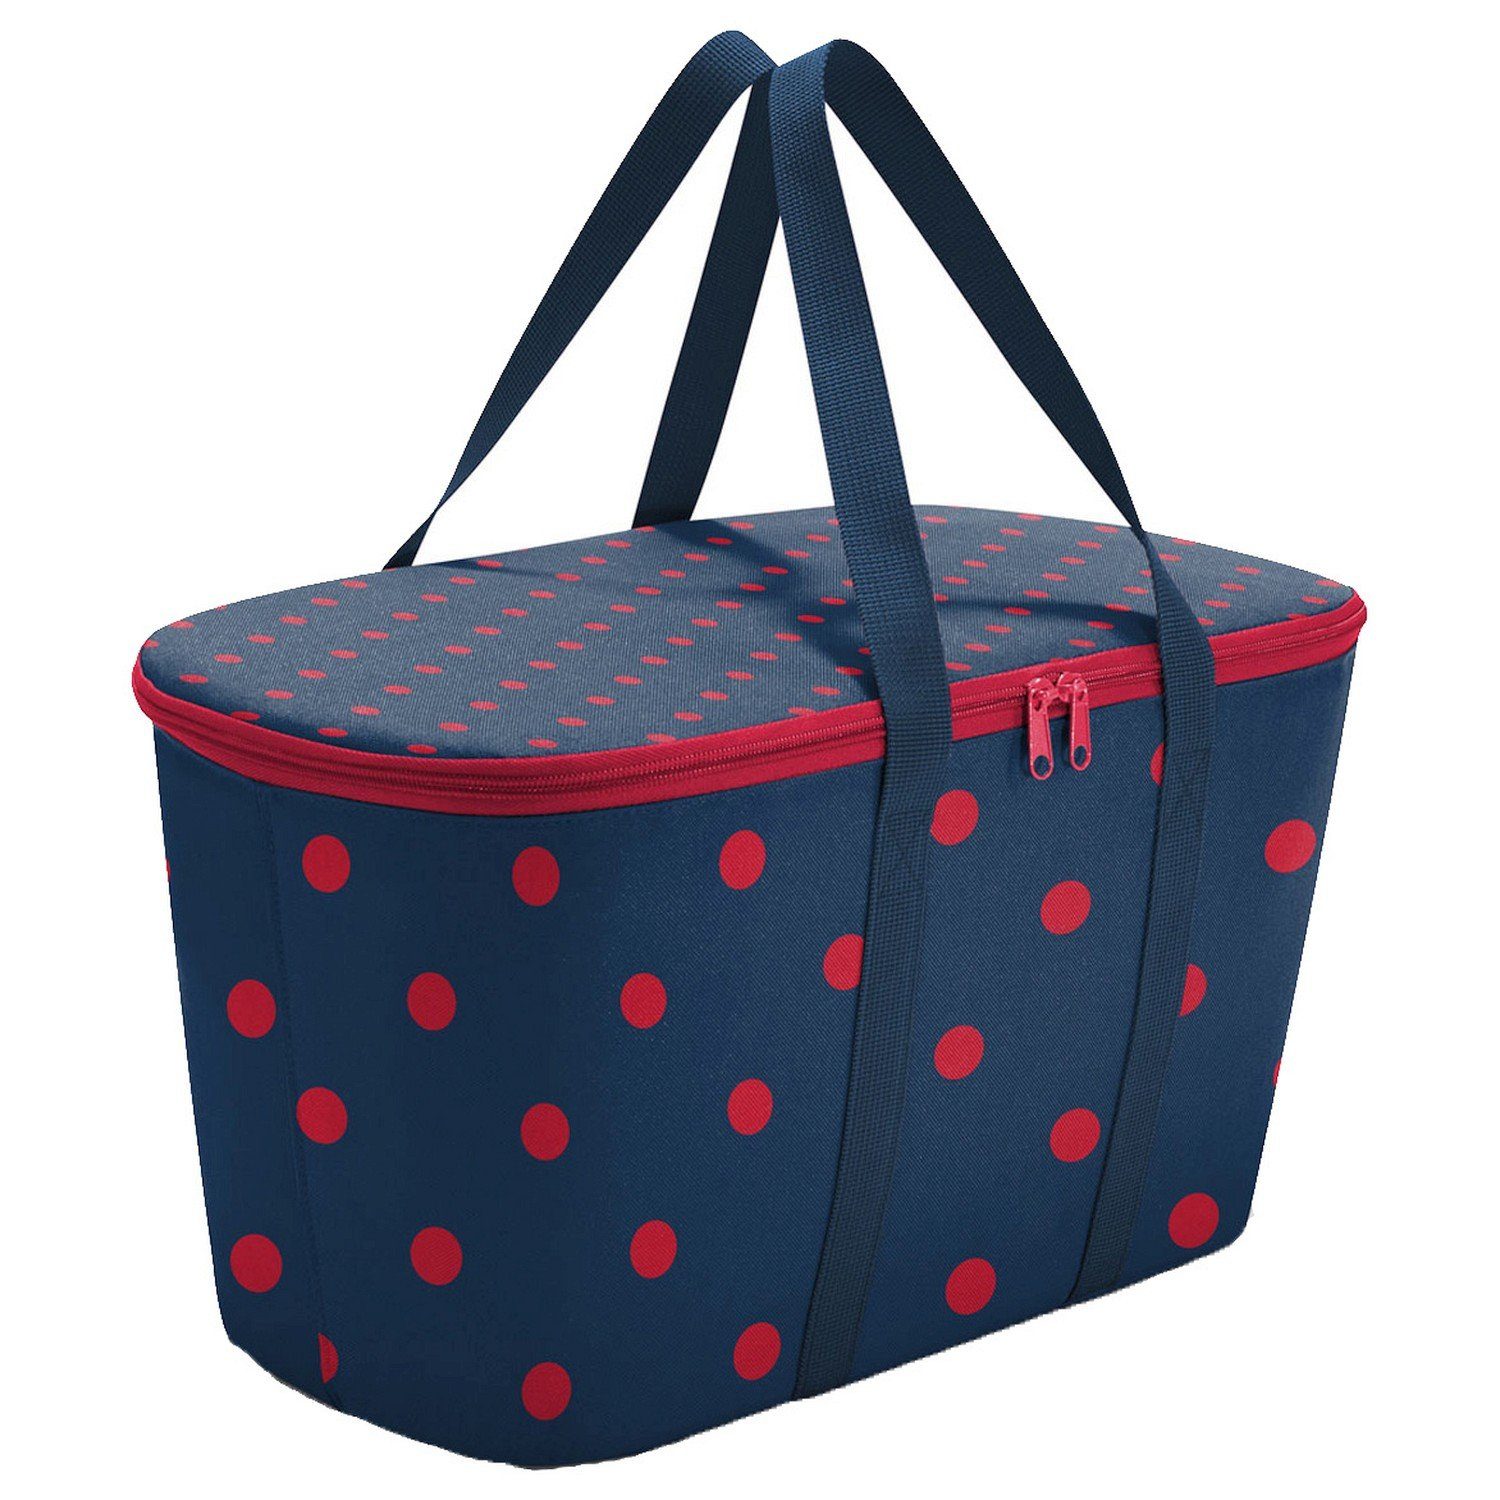 REISENTHEL® Einkaufsbeutel thermo coolerbag - Kühltasche 44.5 cm, 20 l mixed dots red | Einkaufstrolleys